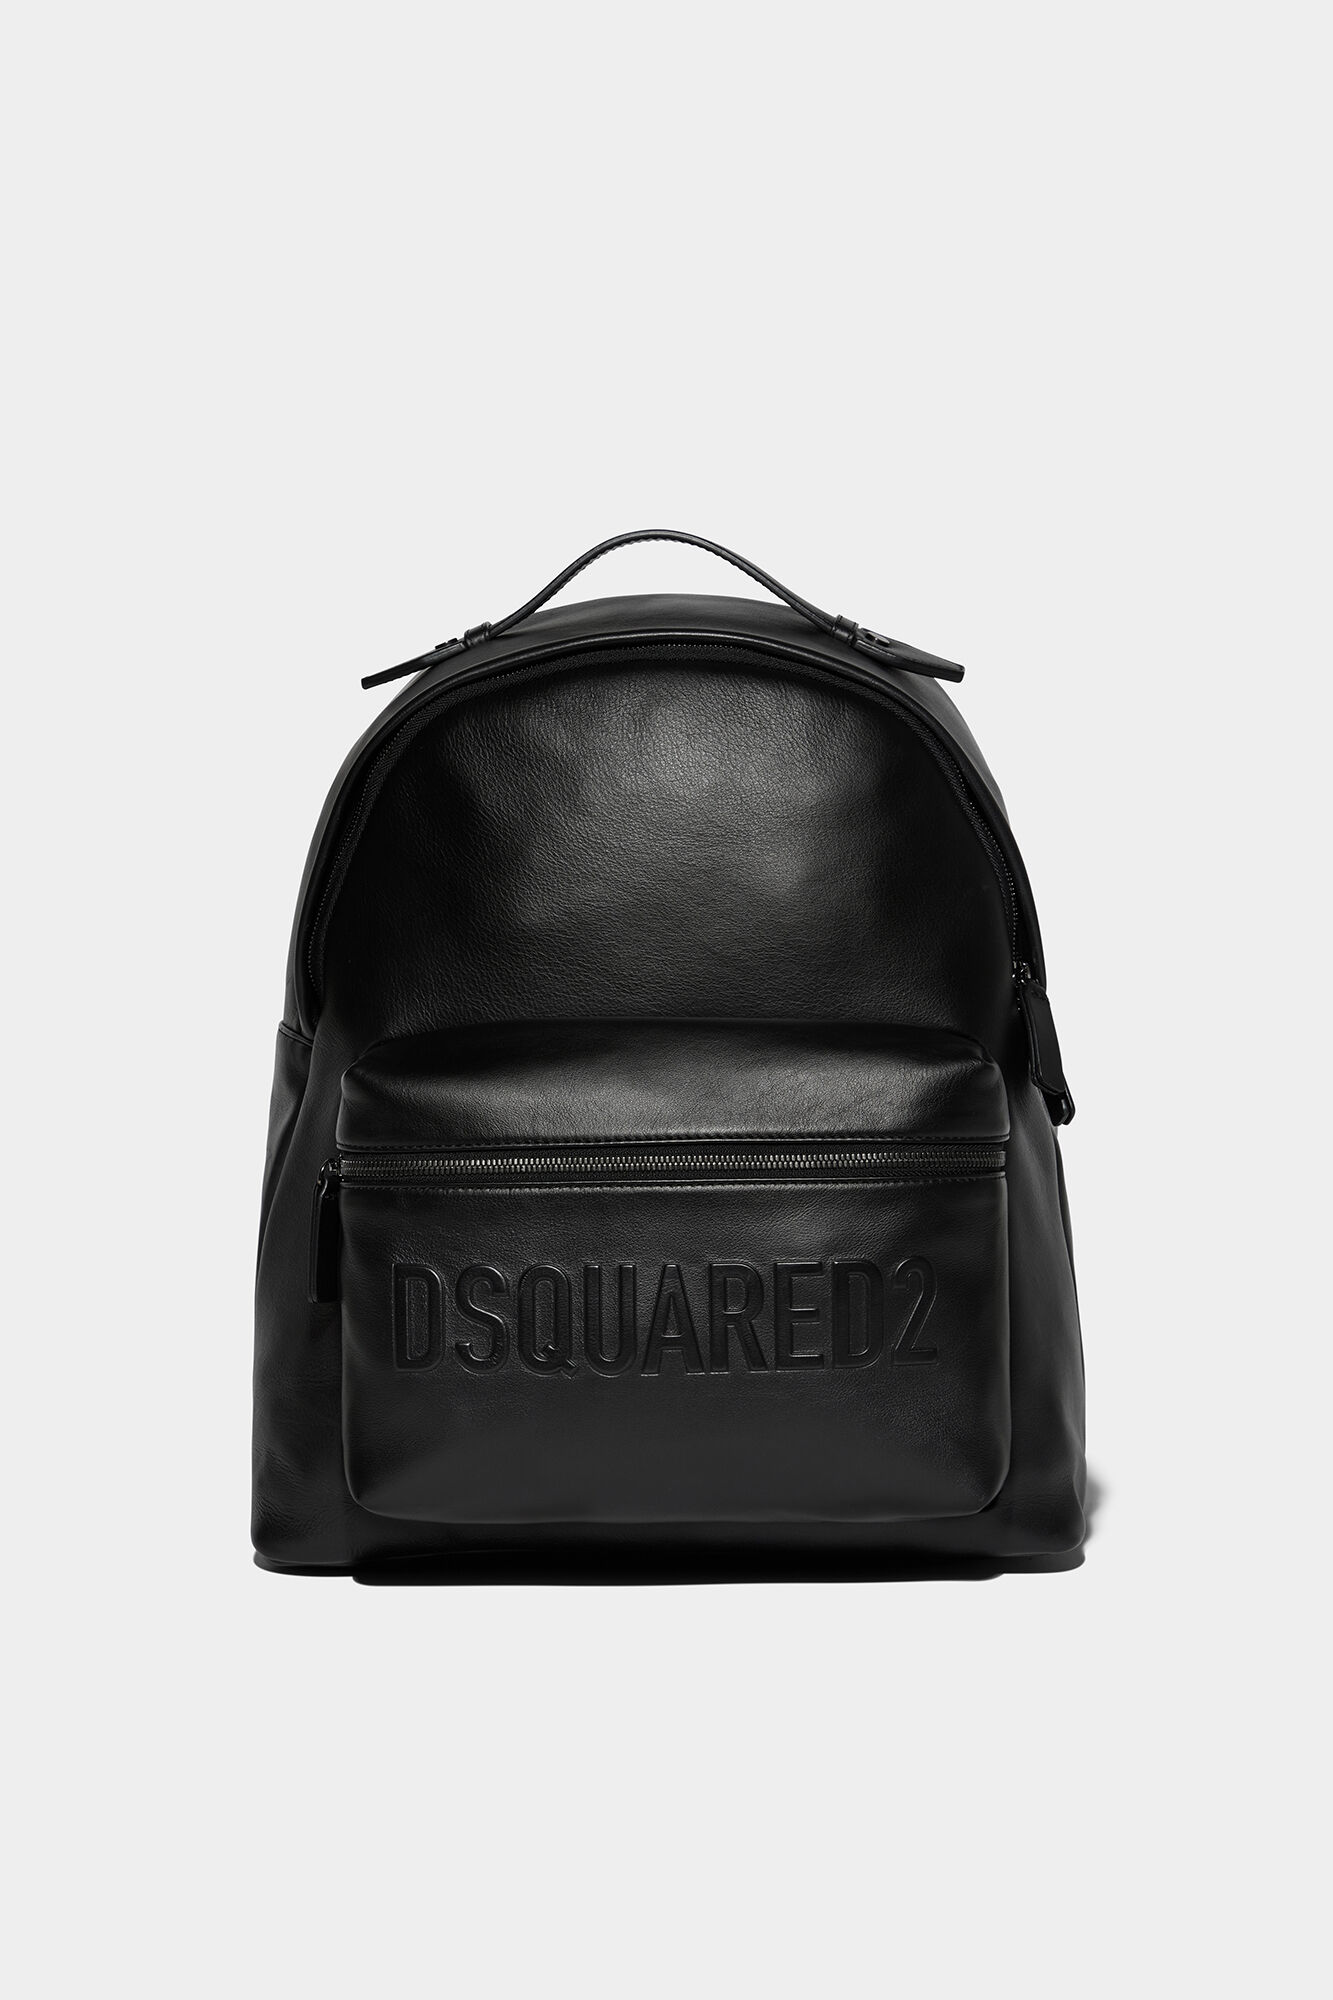 Bob' backpack Dsquared2 - Croissant shoulder bag - GenesinlifeShops KR